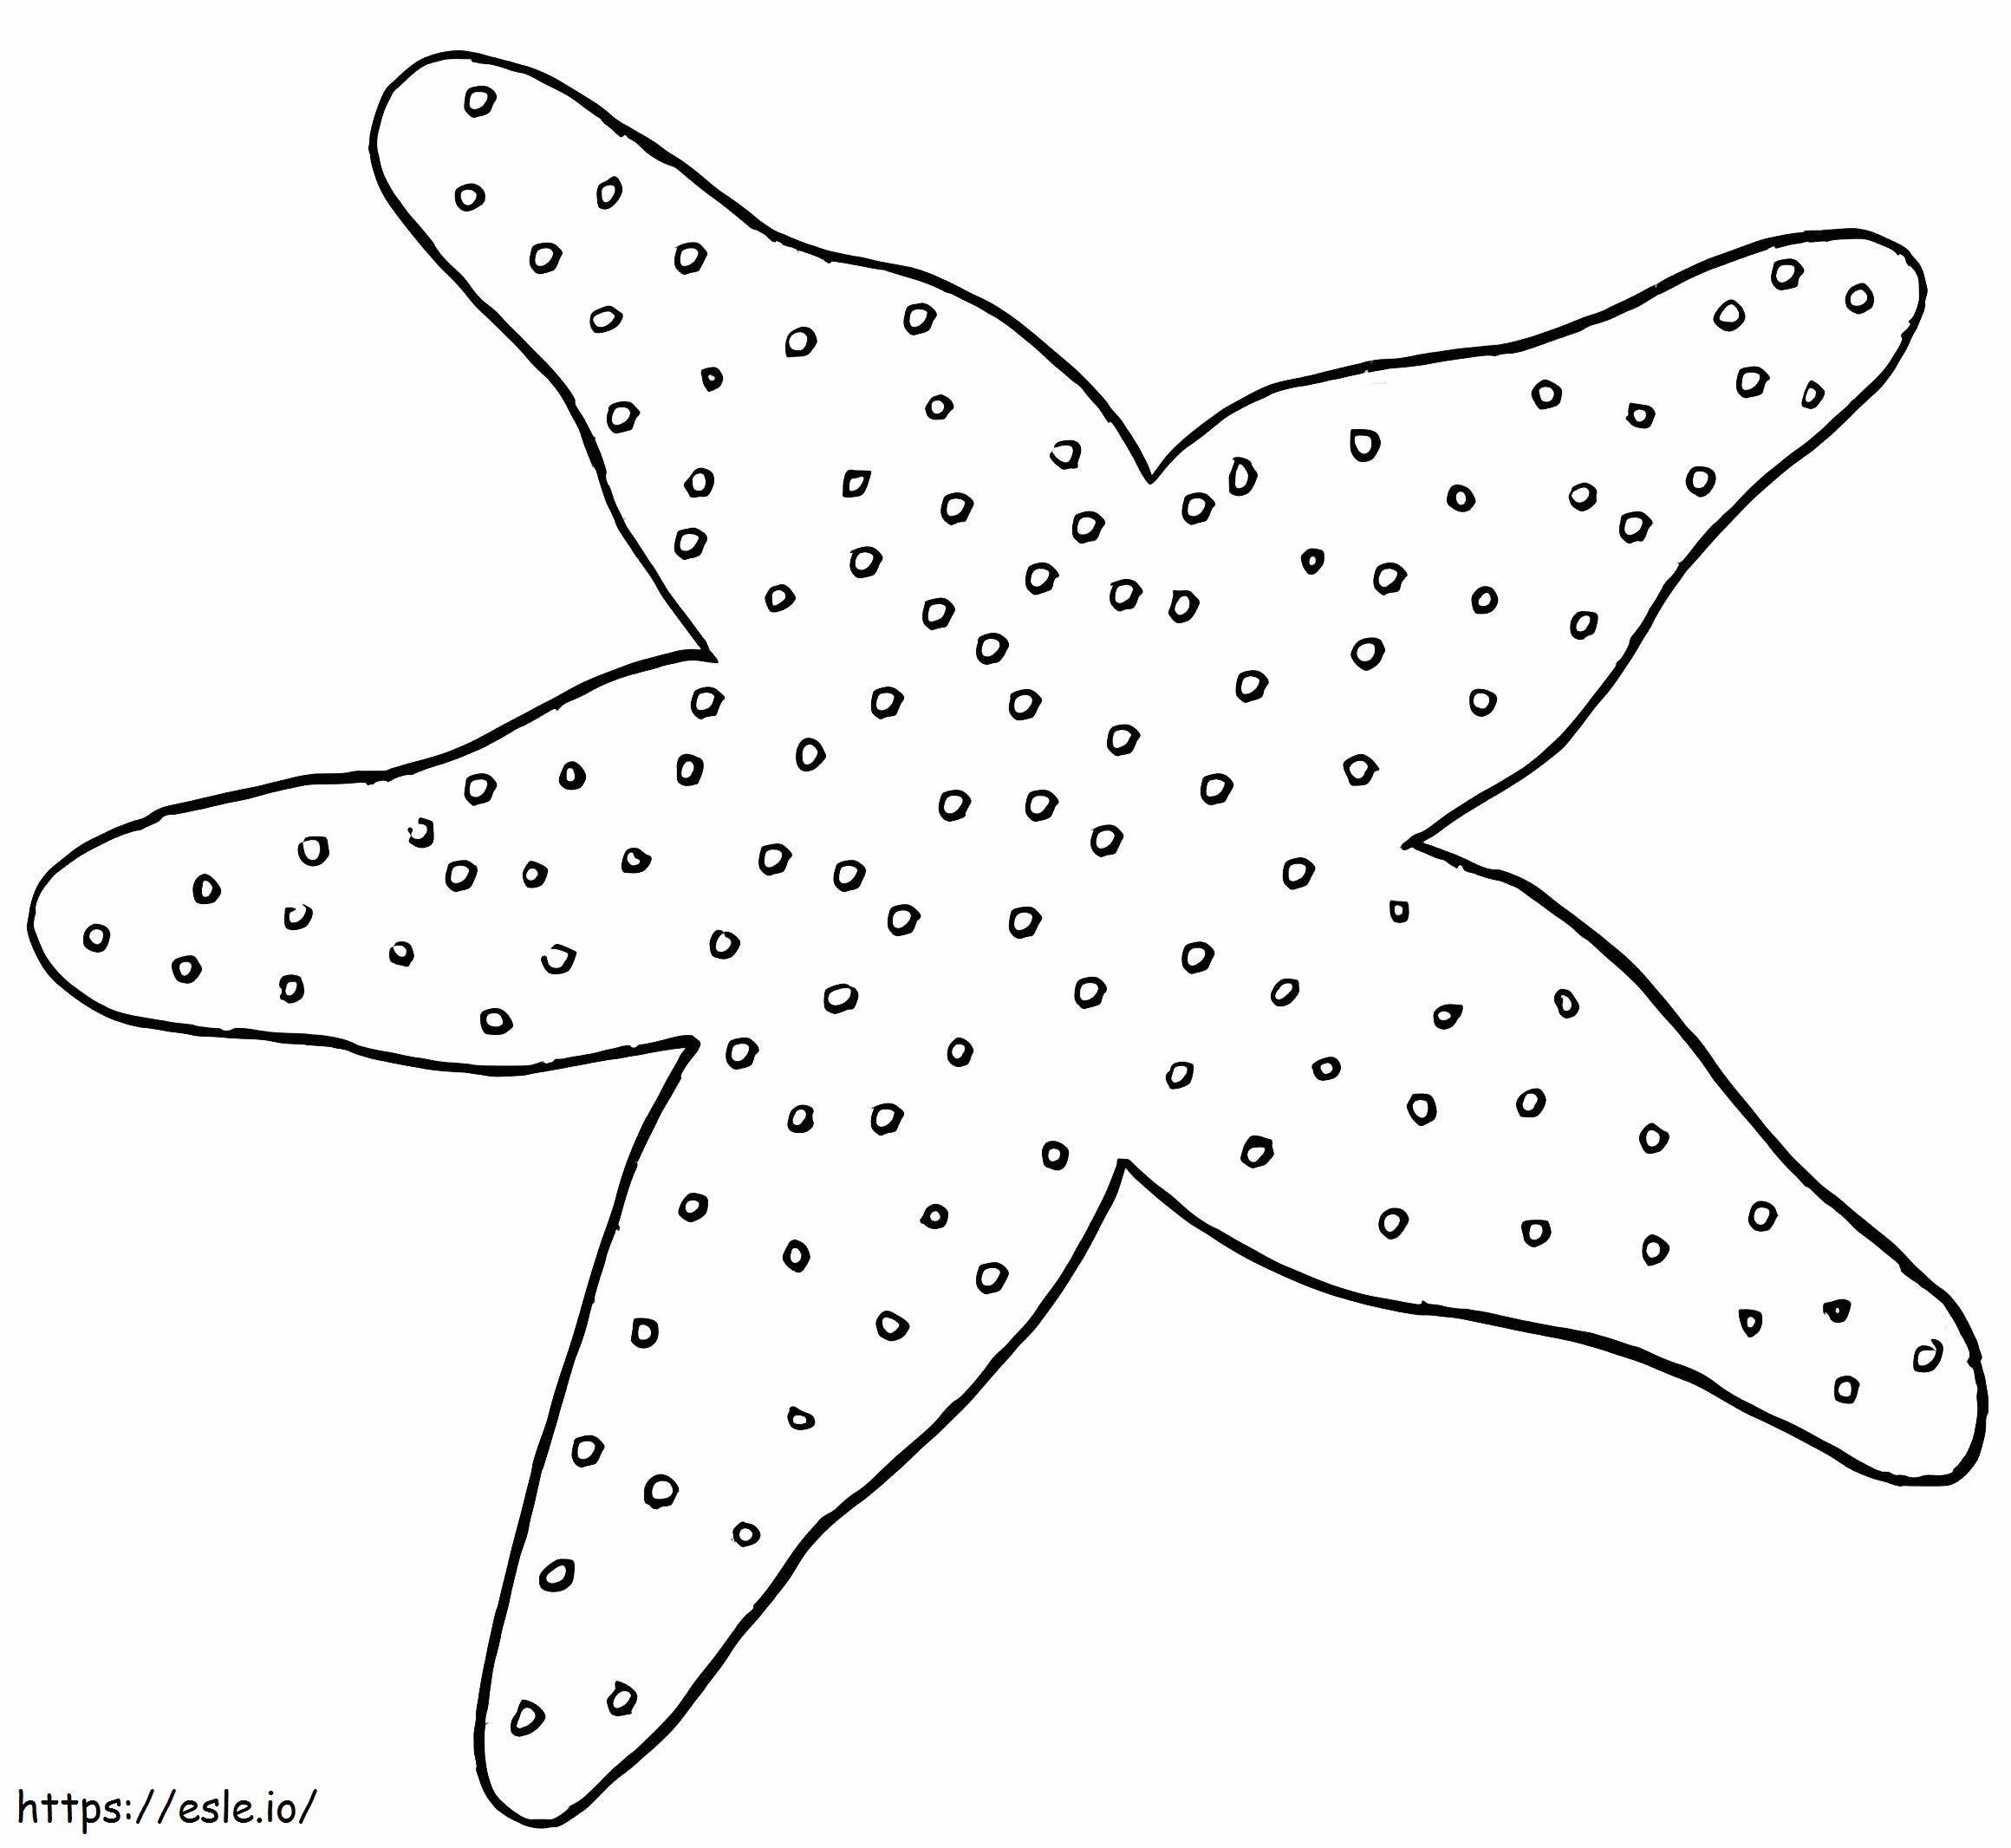 Estrela do Mar normal para colorir